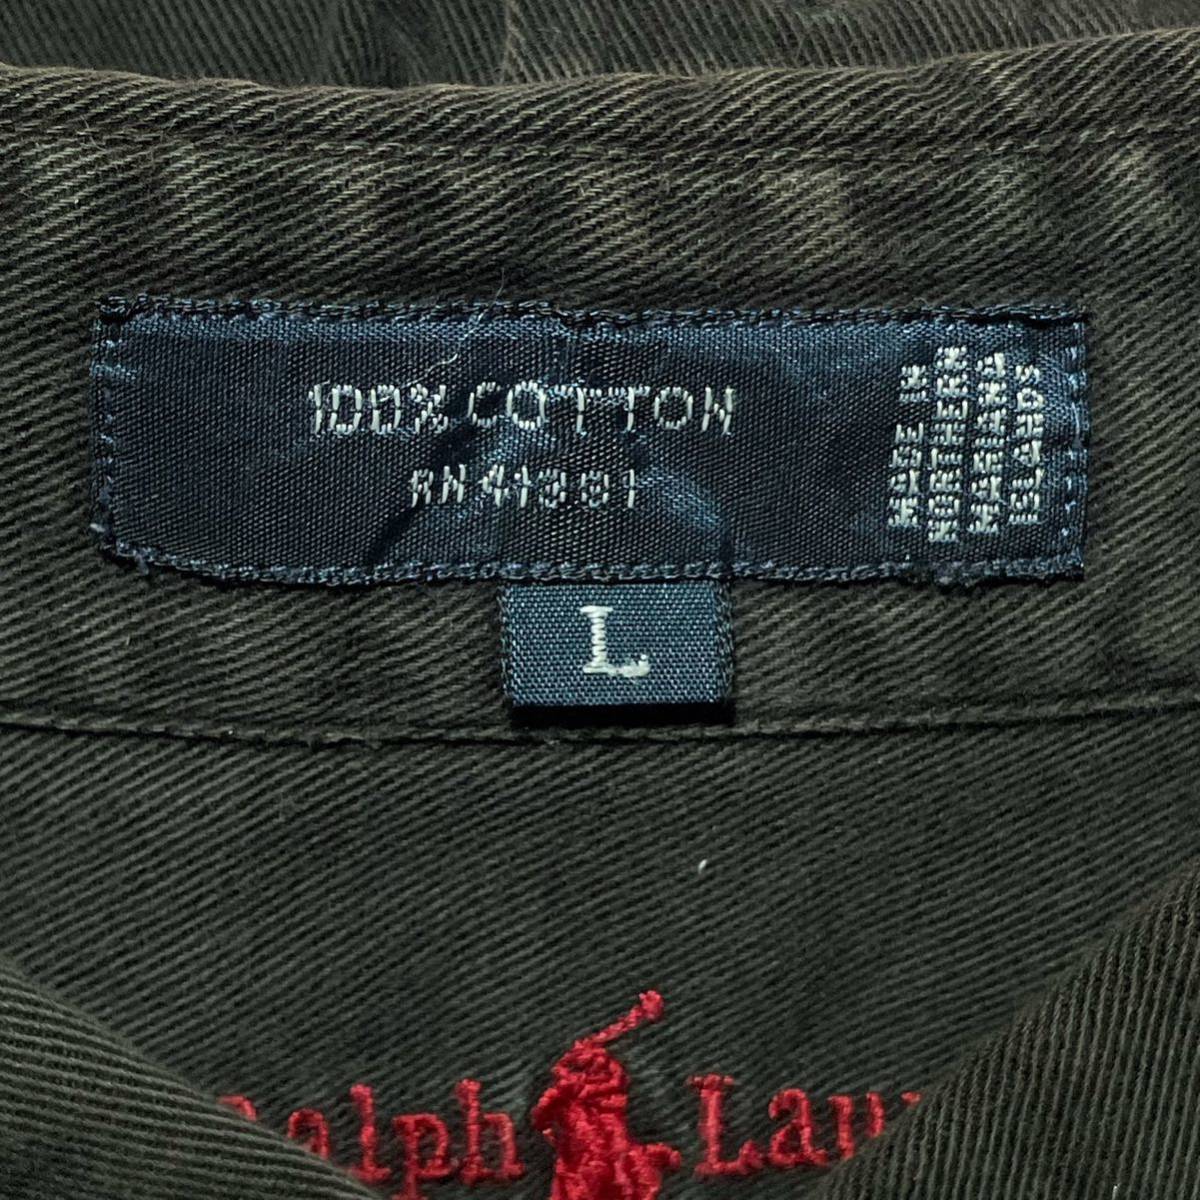 【入手困難】ポロ ラルフローレン 90s 刺繍タグ BD 長袖シャツ 大きめ 茶色 メンズ XLサイズ相当 Polo by Ralph Lauren